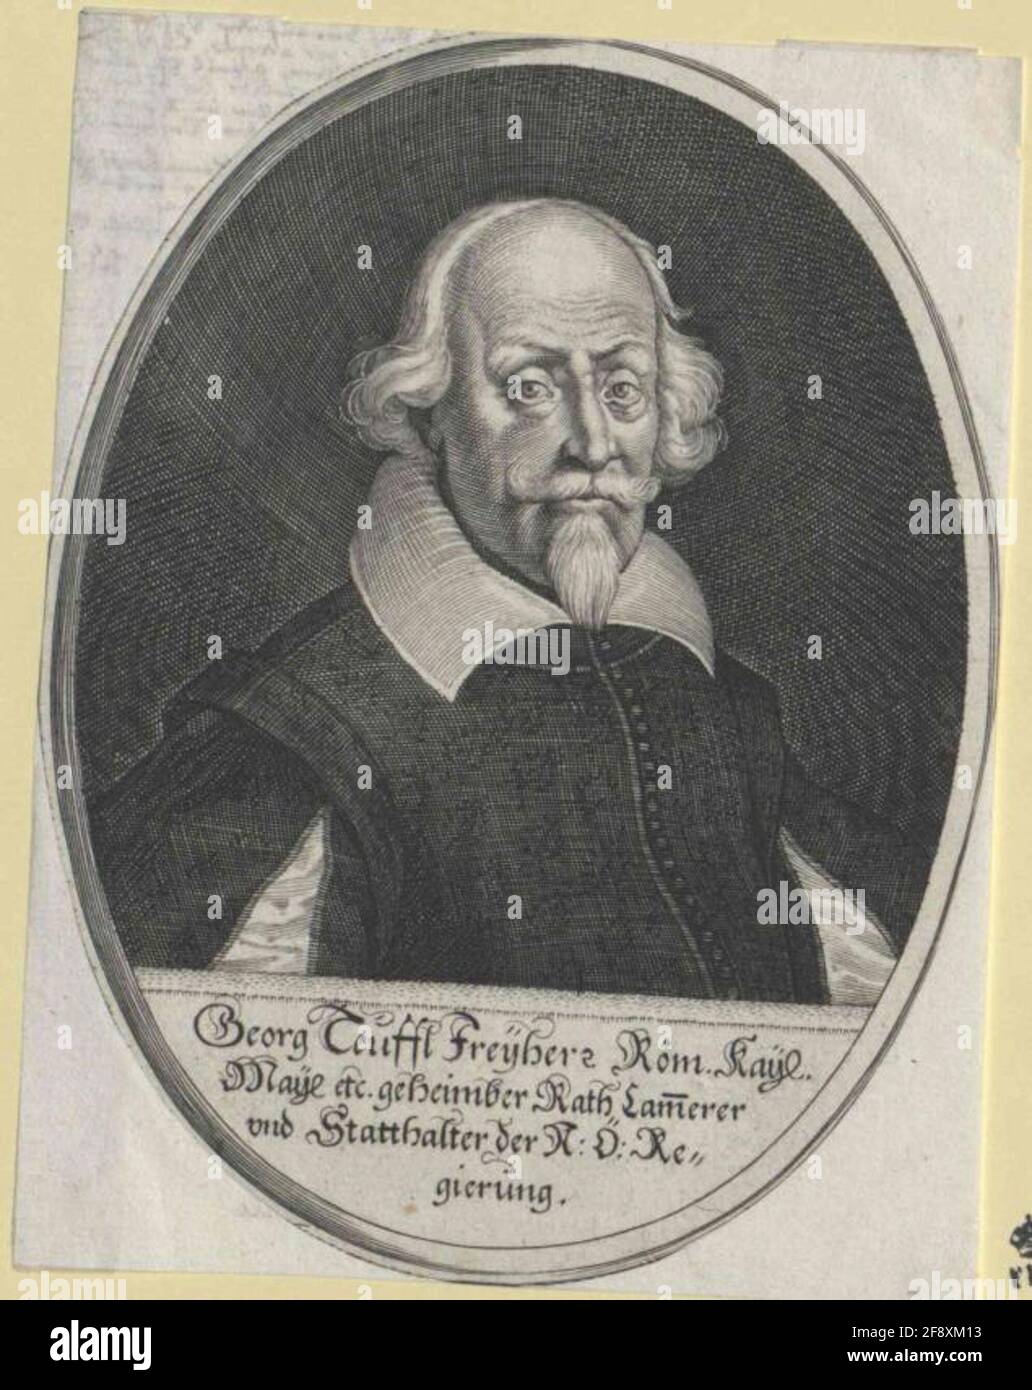 Teufel, Freiherr von Guntersdorf, George. Stock Photo